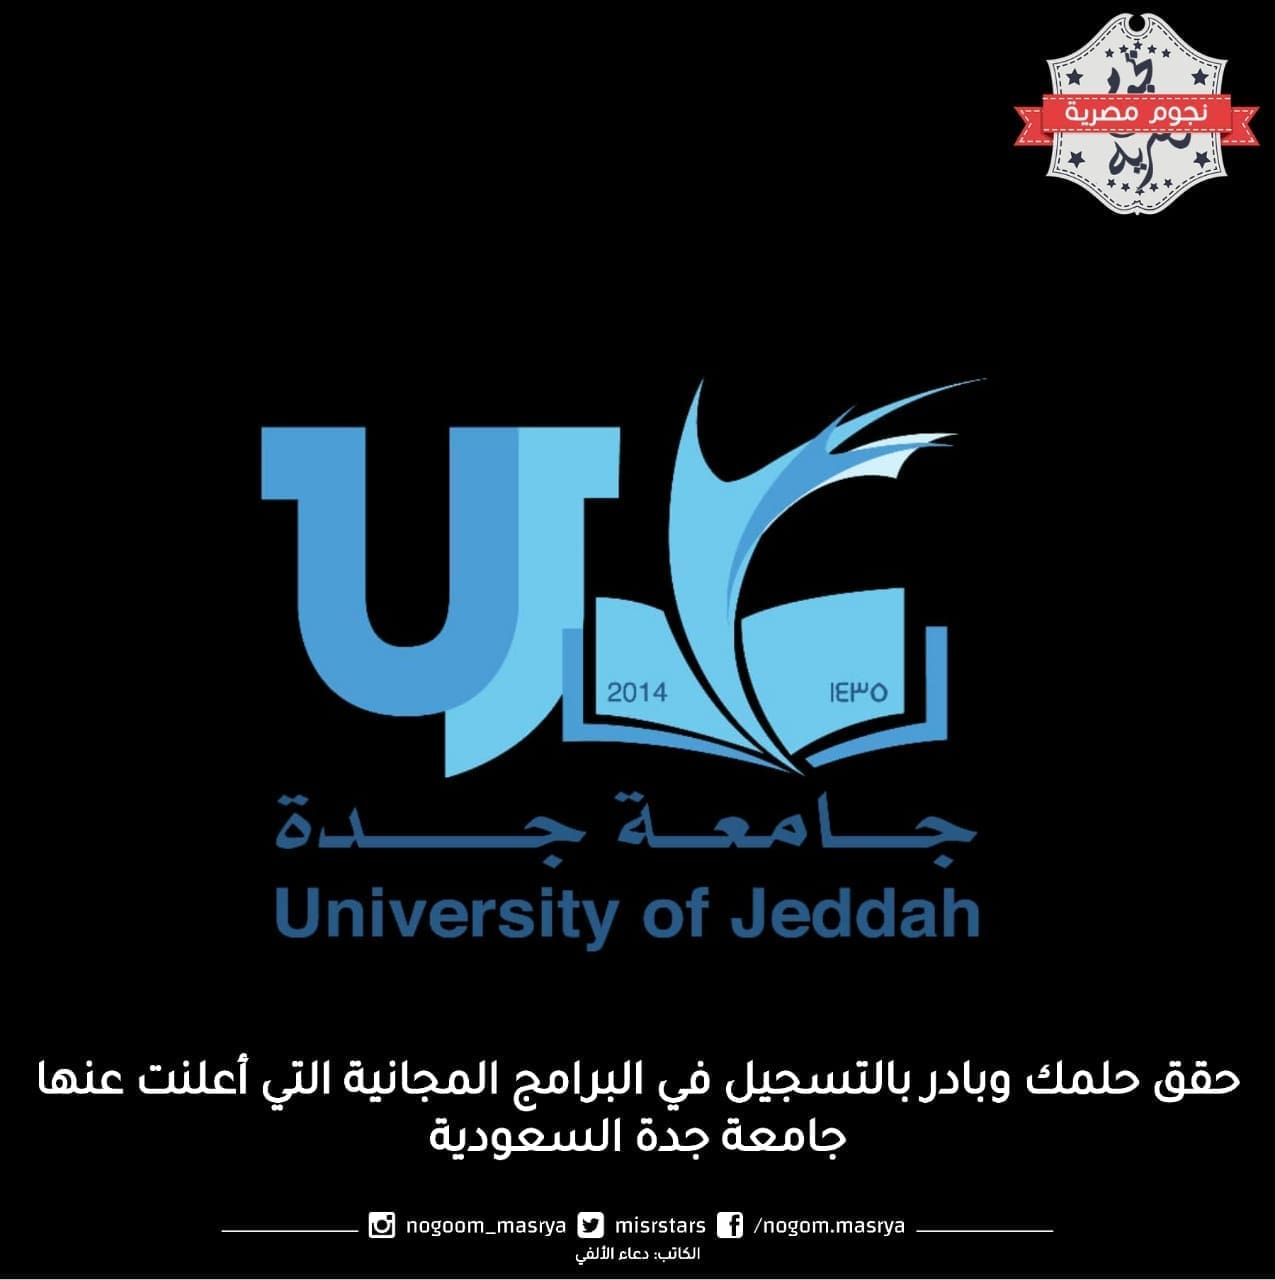 البرامج المجانية التي أعلنت عنها جامعة جدة السعودية 